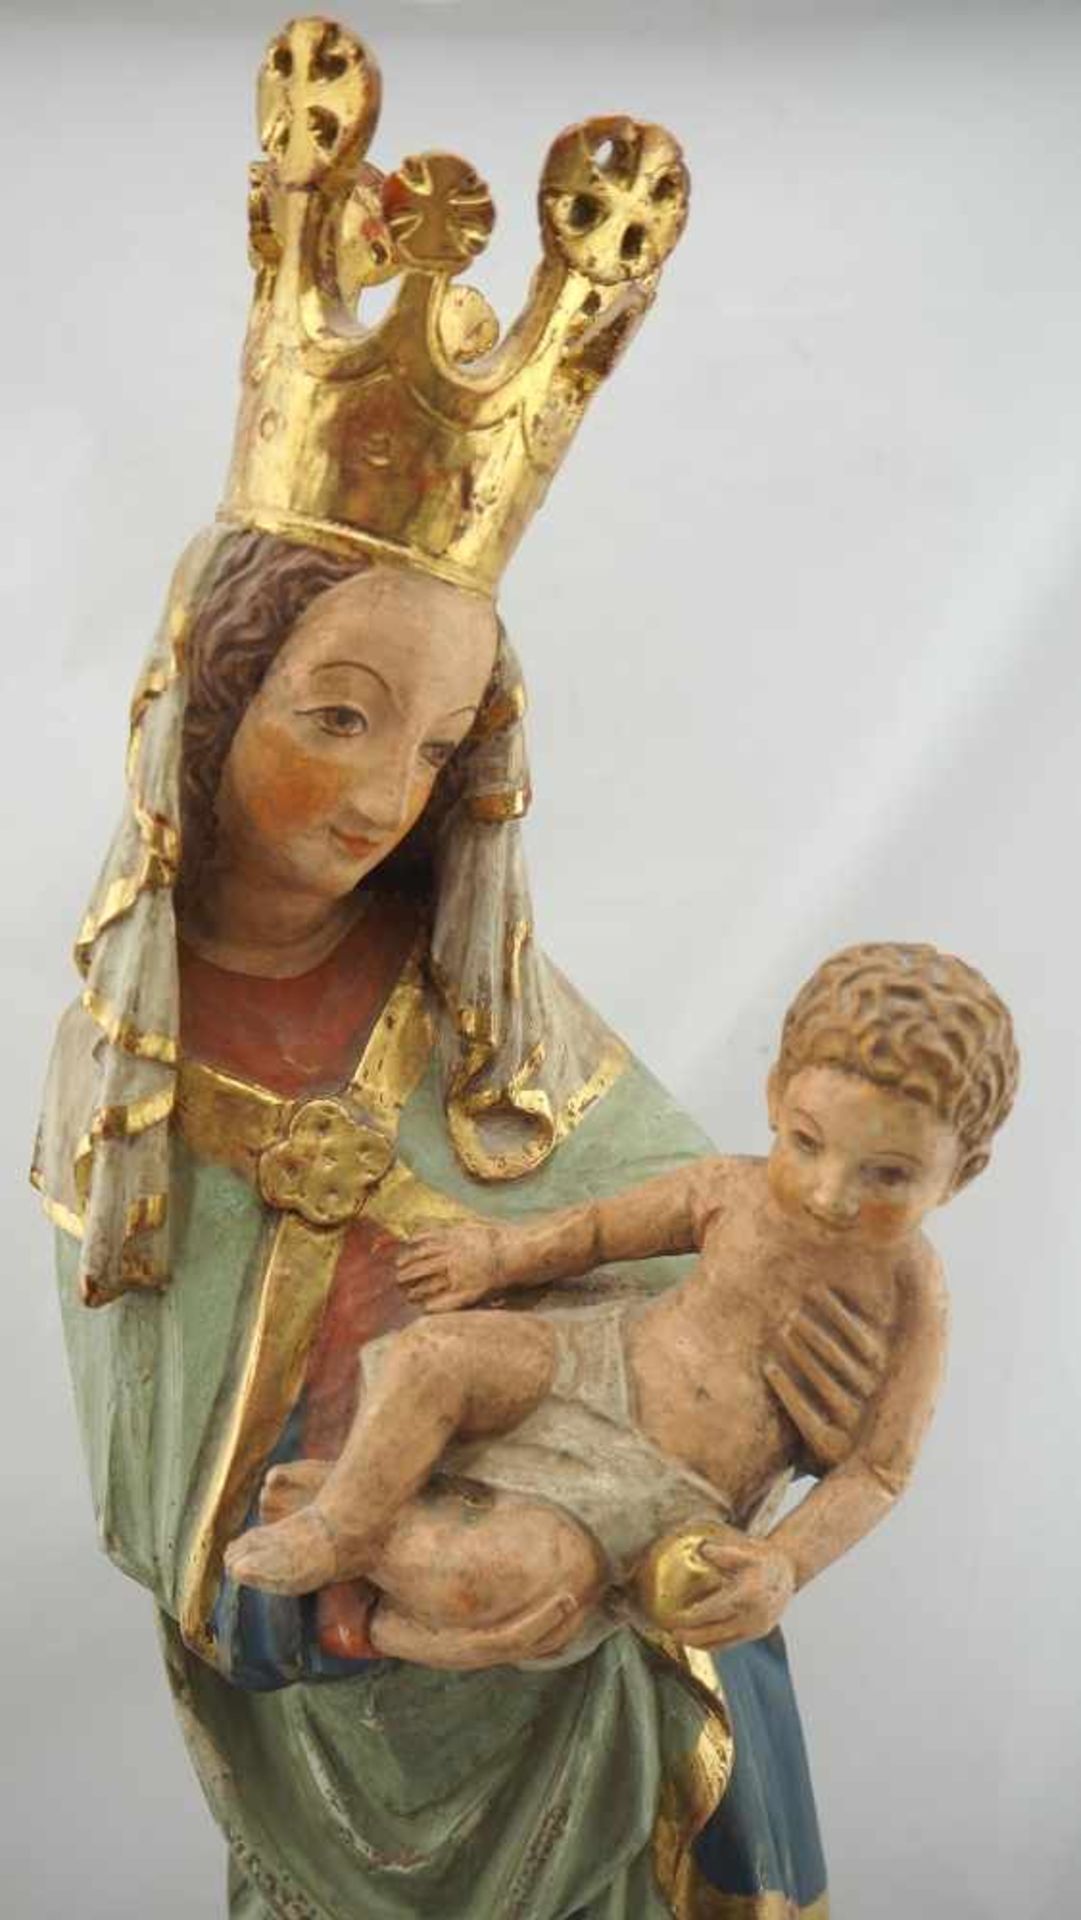 Madonna mit KindAus Lindenholz geschnitzt, farbig gefasst mit Goldstaffage. Barocke Formgebung, - Bild 2 aus 4